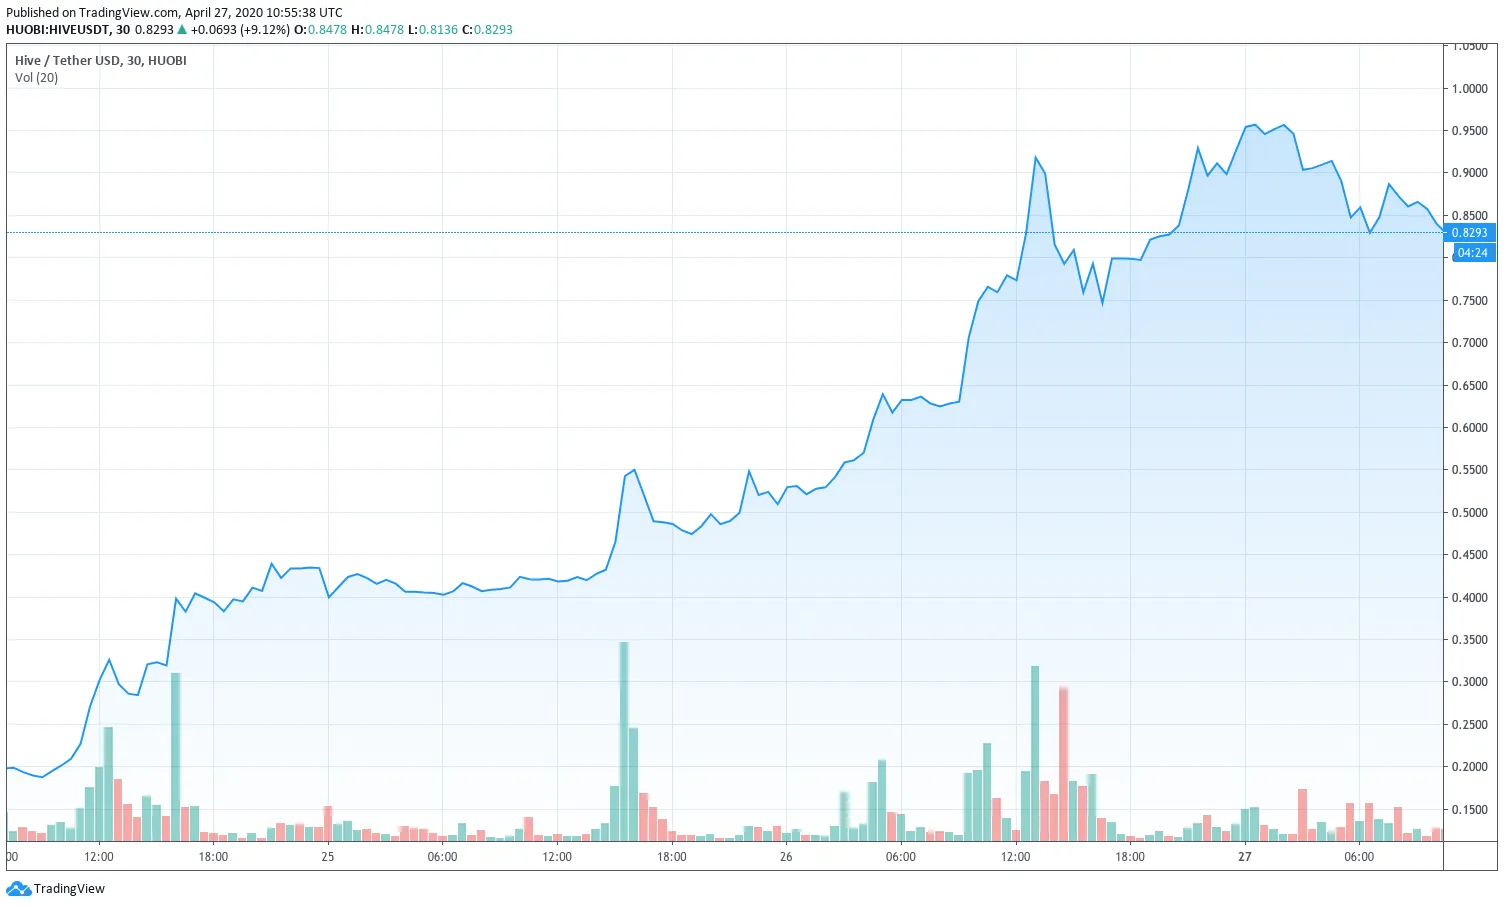 Hive subió hasta 0,95 dólares en Huobi Global. Ahora está cotizando alrededor de 0,83 dólares en Huobi y 0,66 dólares en Binance. (Imagen: TradingView)